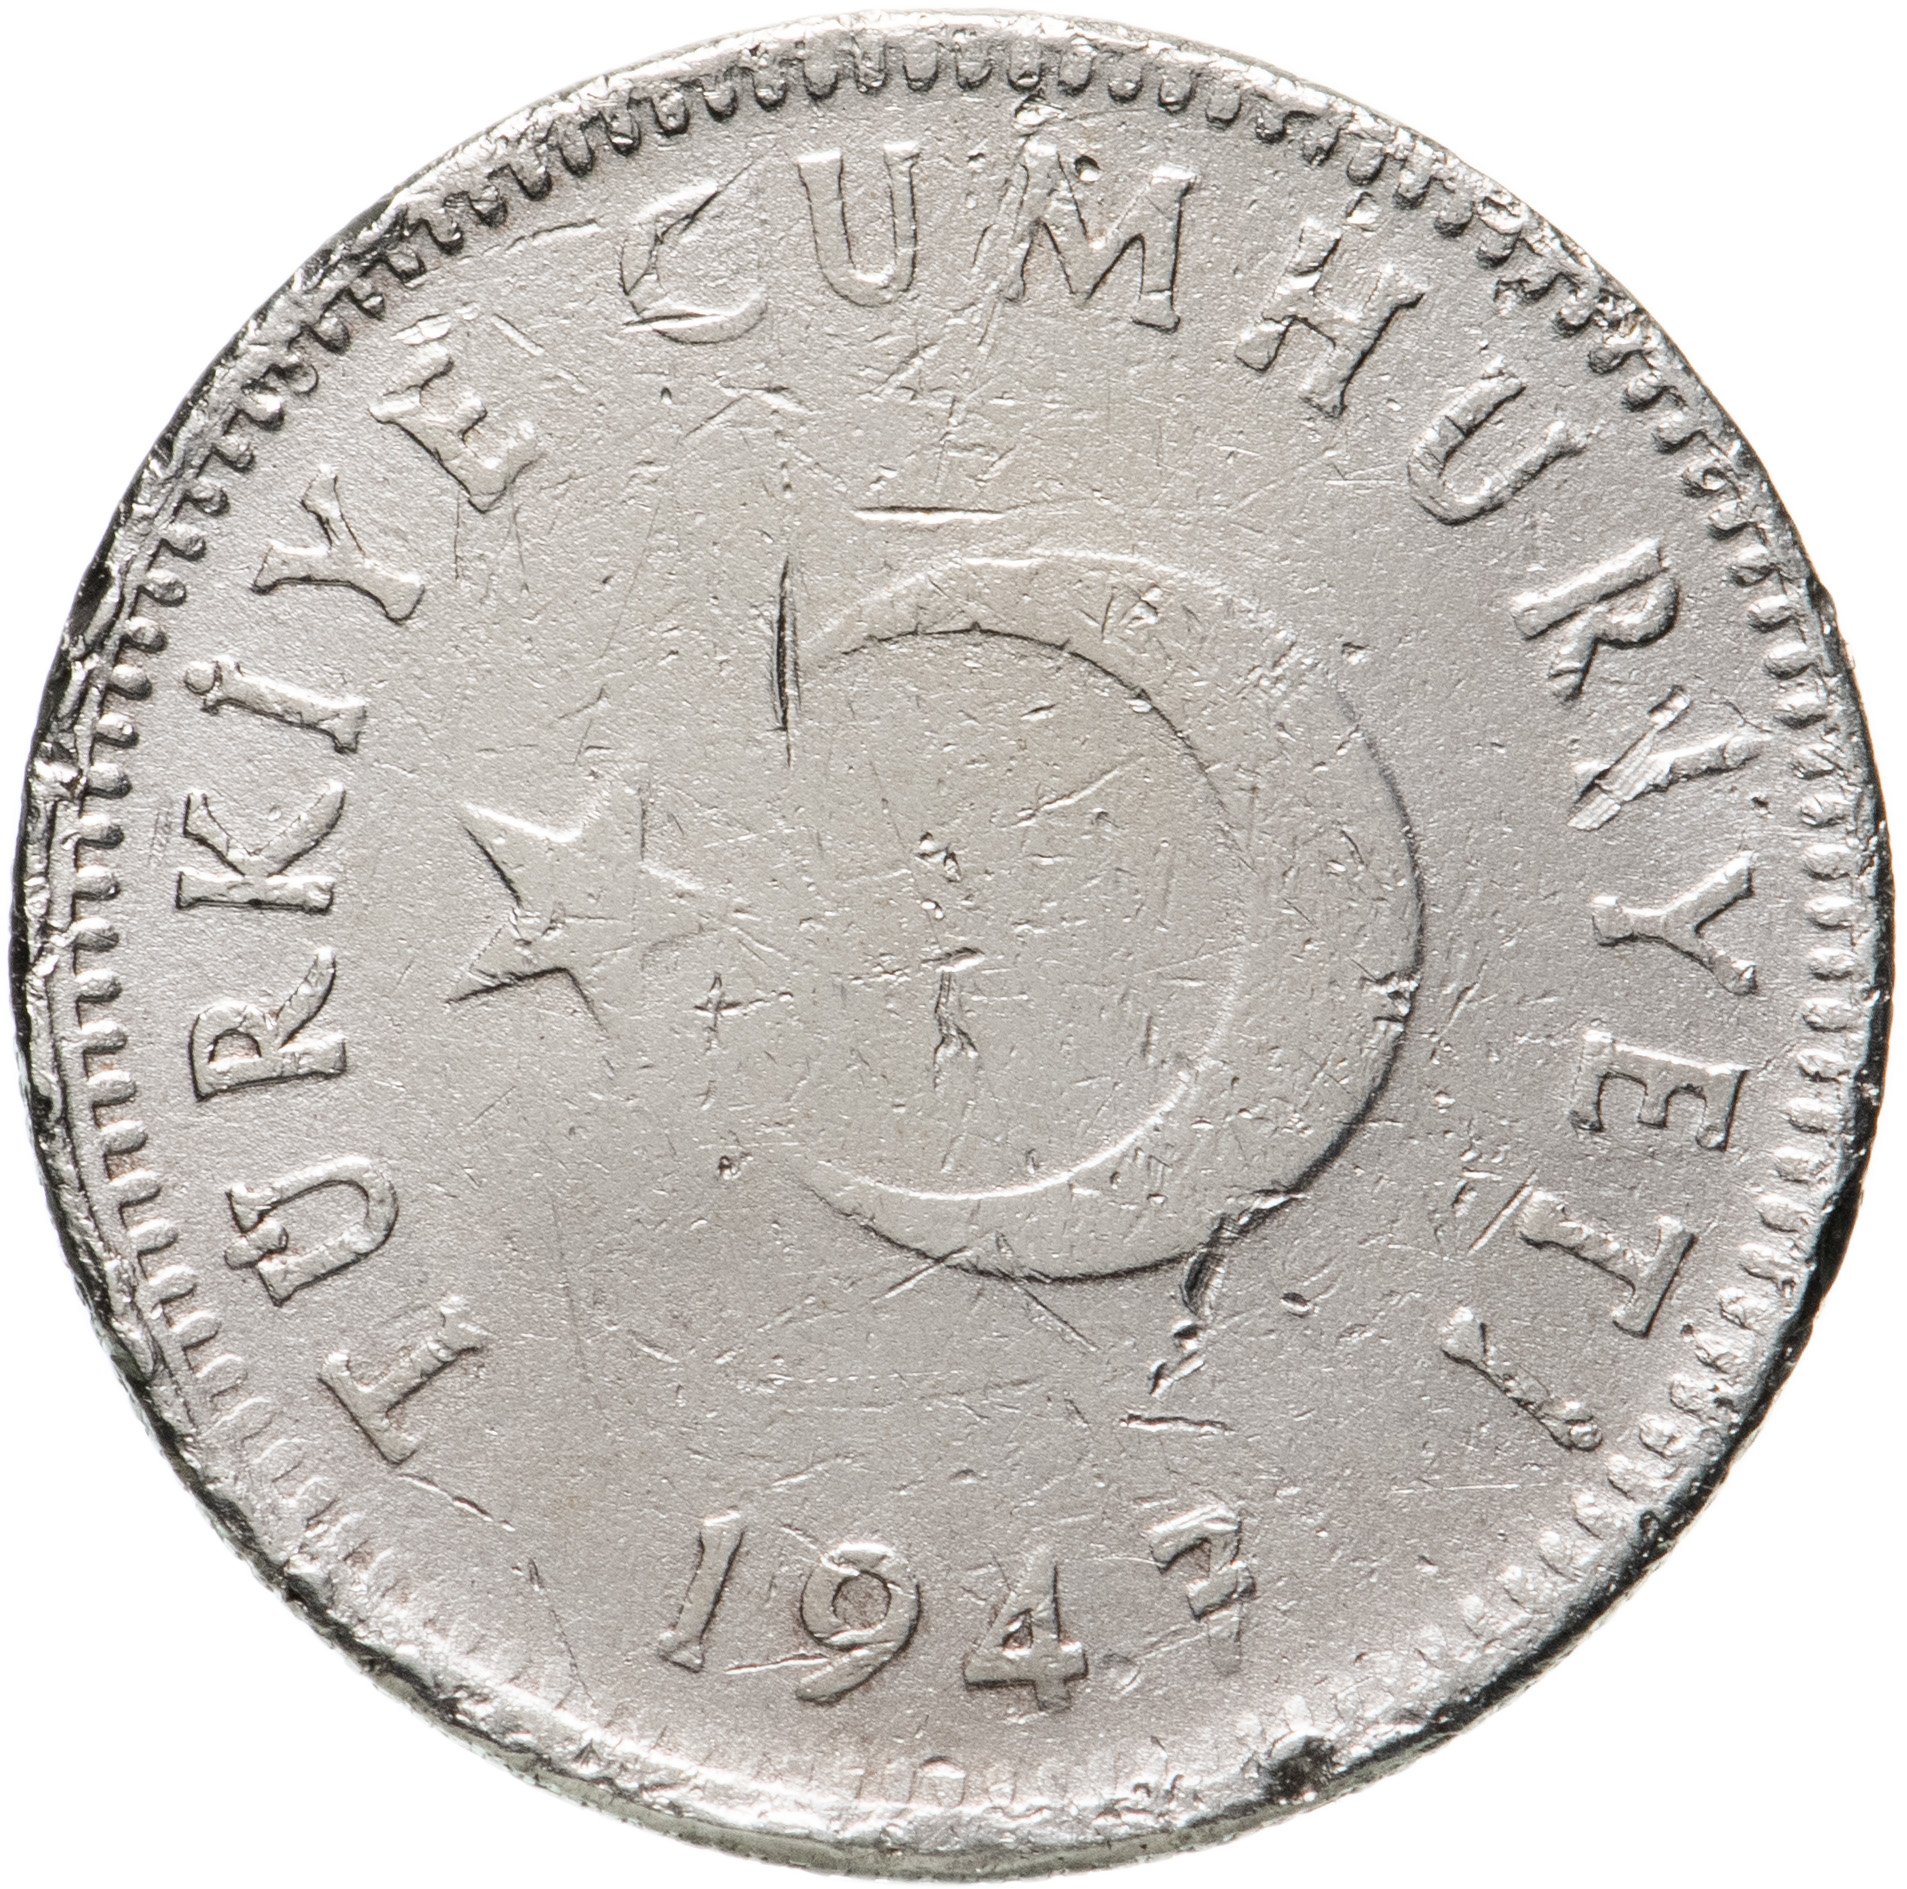 Сколько рублей в 1 лире. Турецкая серебряная монета.